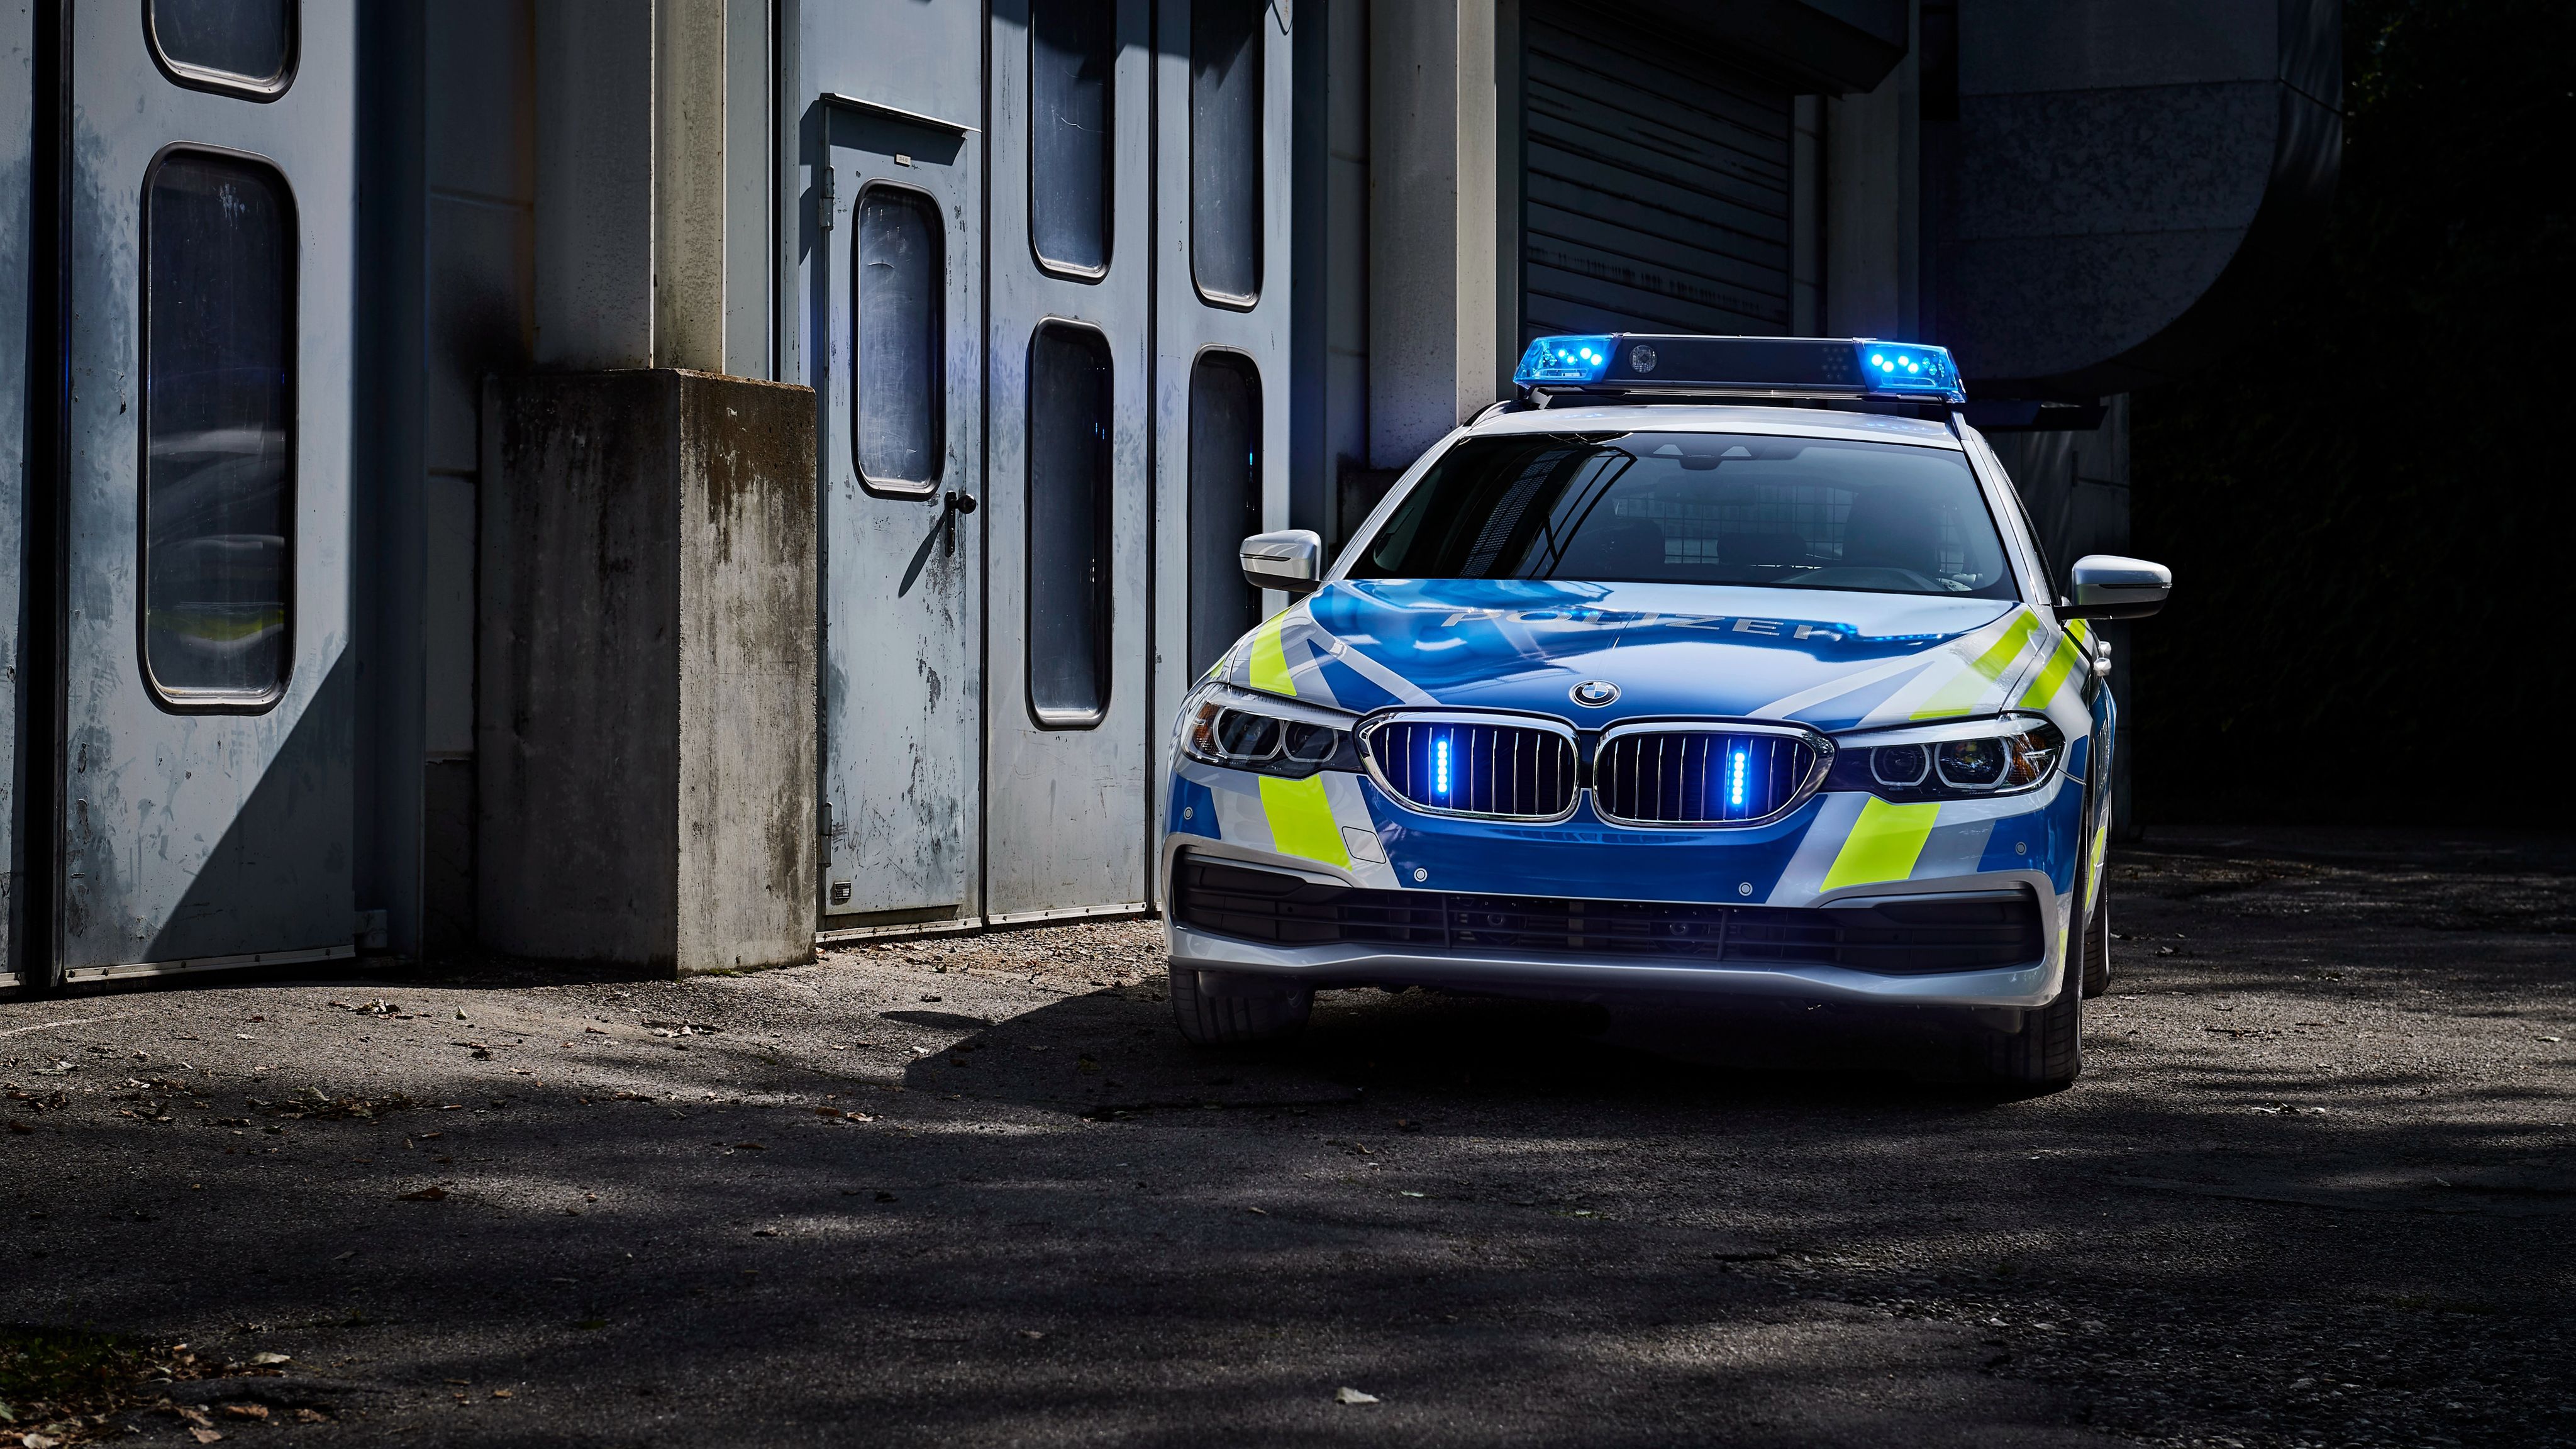 BMW 530d xDrive Touring Polizei 2017 4K Wallpaper. HD Car